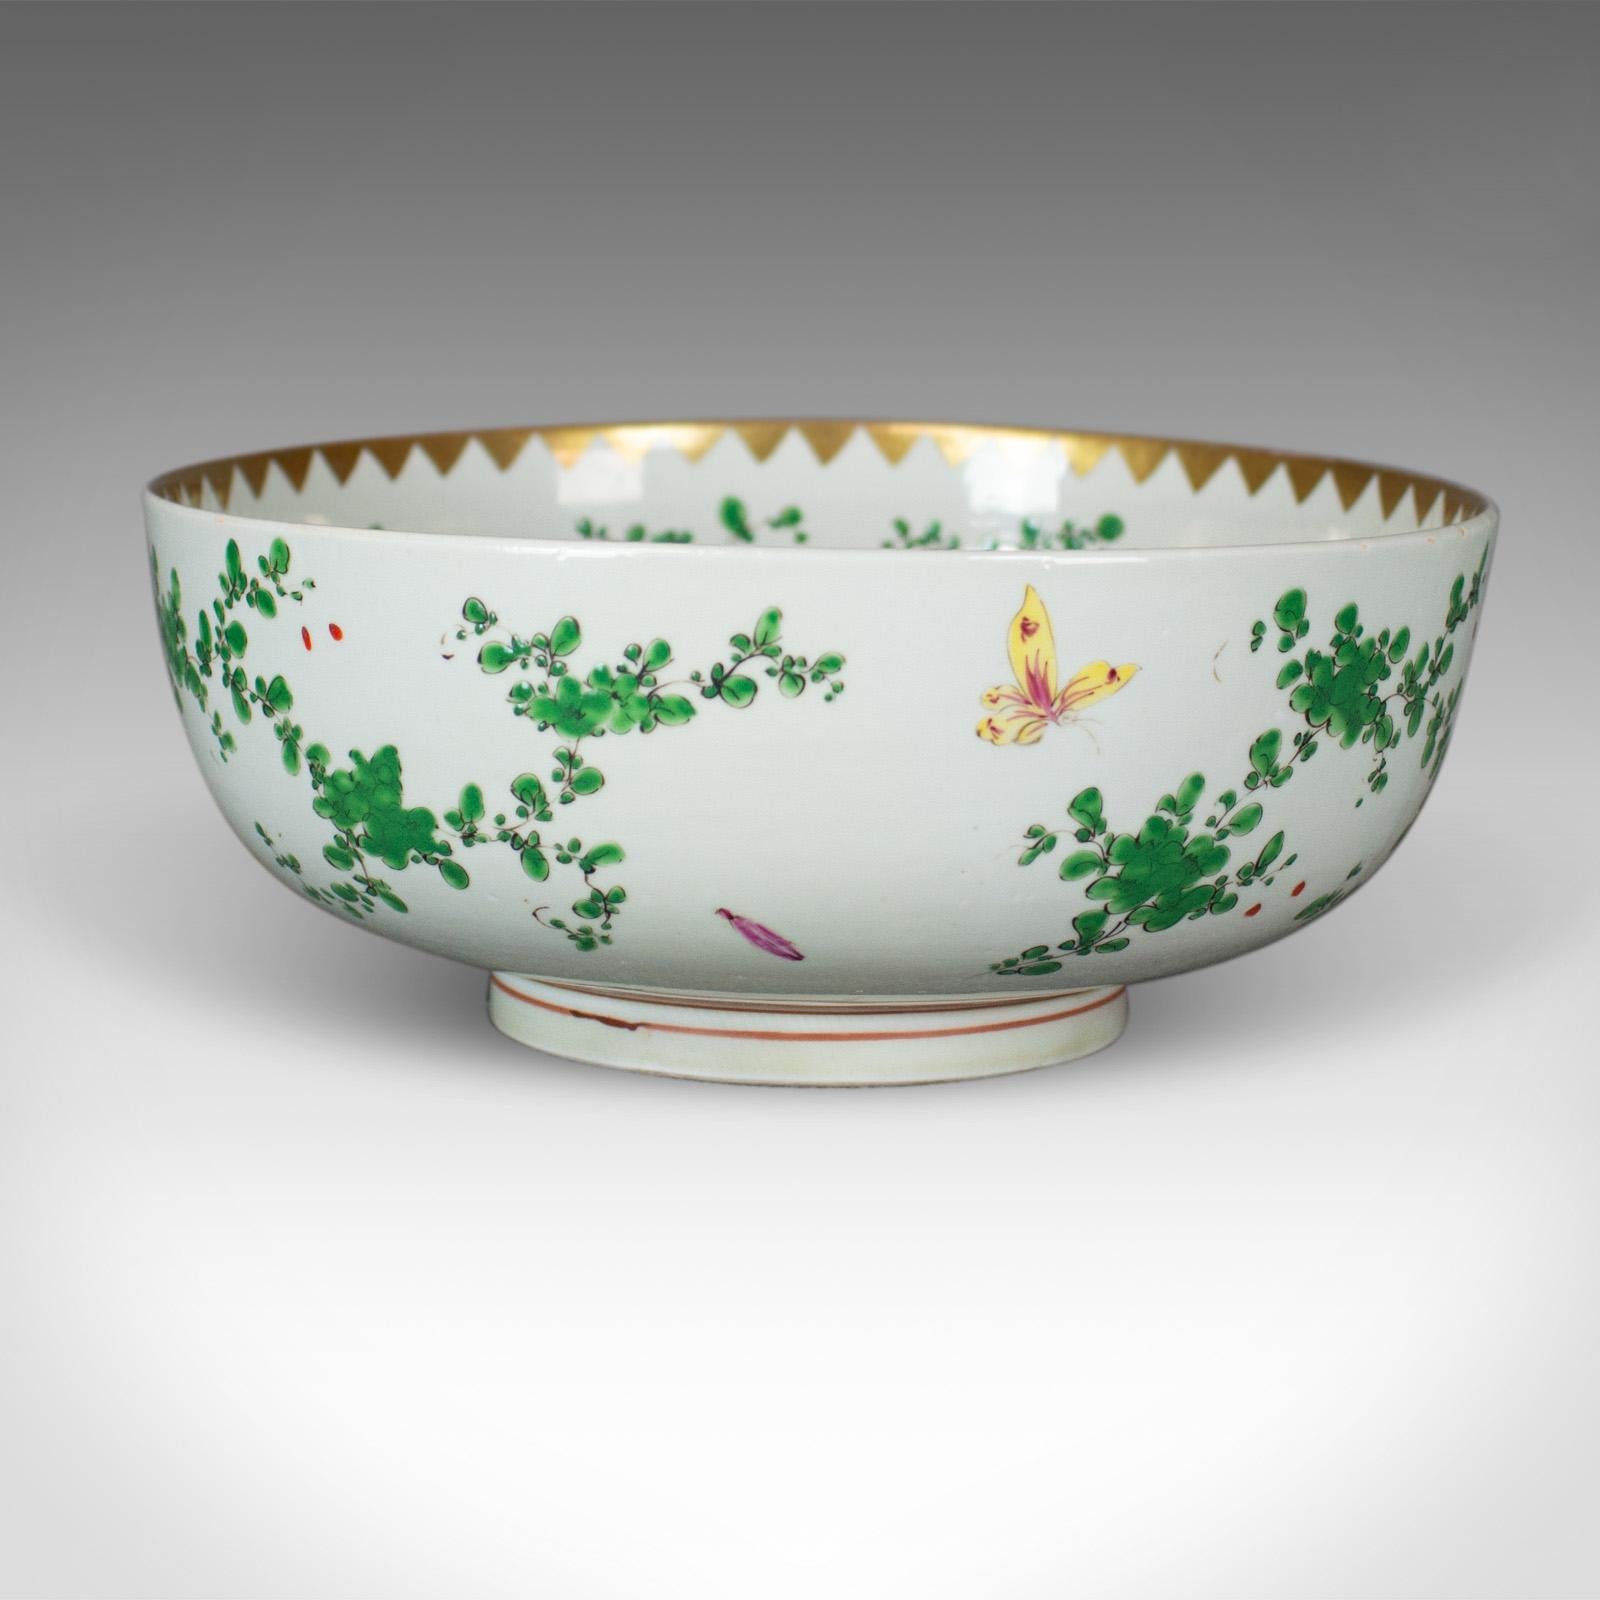 Es handelt sich um eine große chinesische Litschi-Schale aus Porzellan in Naturtönen auf weißem Grund, die aus dem späten 20. Jahrhundert stammt.

Eine attraktive Schale in durchweg gutem Zustand
Bemalt mit exotischen Vögeln, Schmetterlingen und